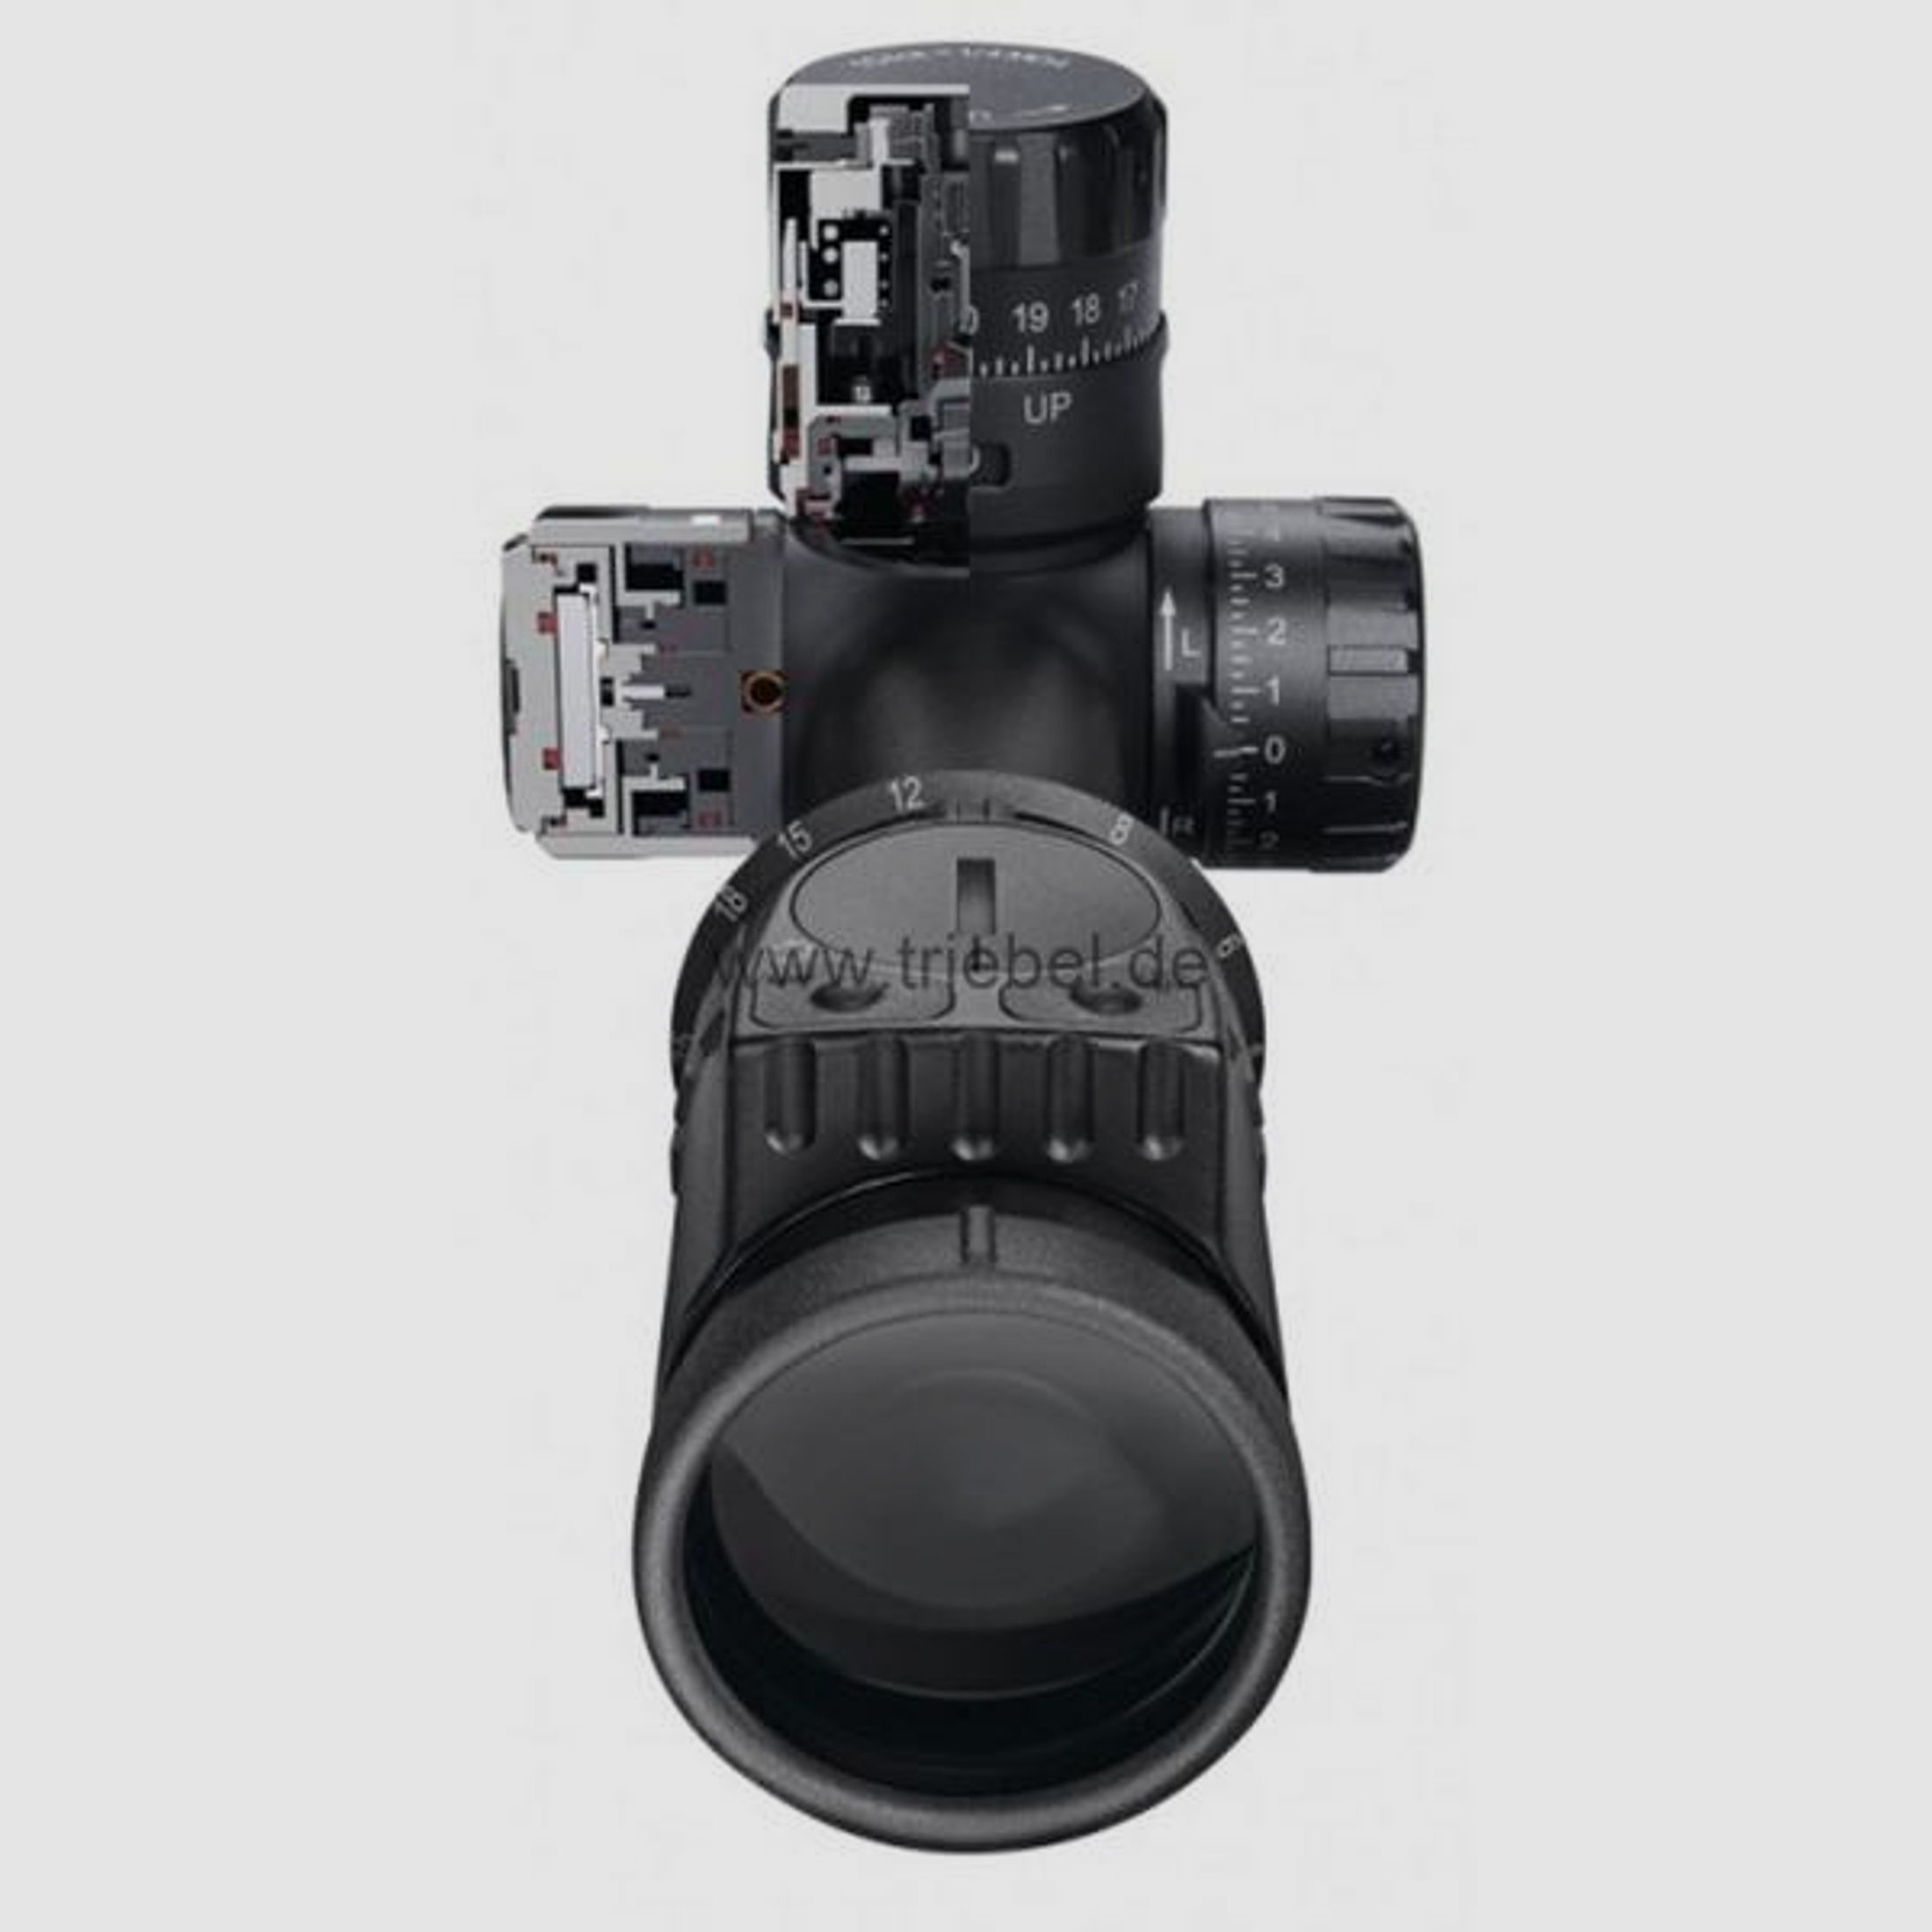 SWAROVSKI Zielfernrohr mit Leuchtabsehen 5-25x56 X5i P 1/8 MOA (30mm) Abs. Plex-I